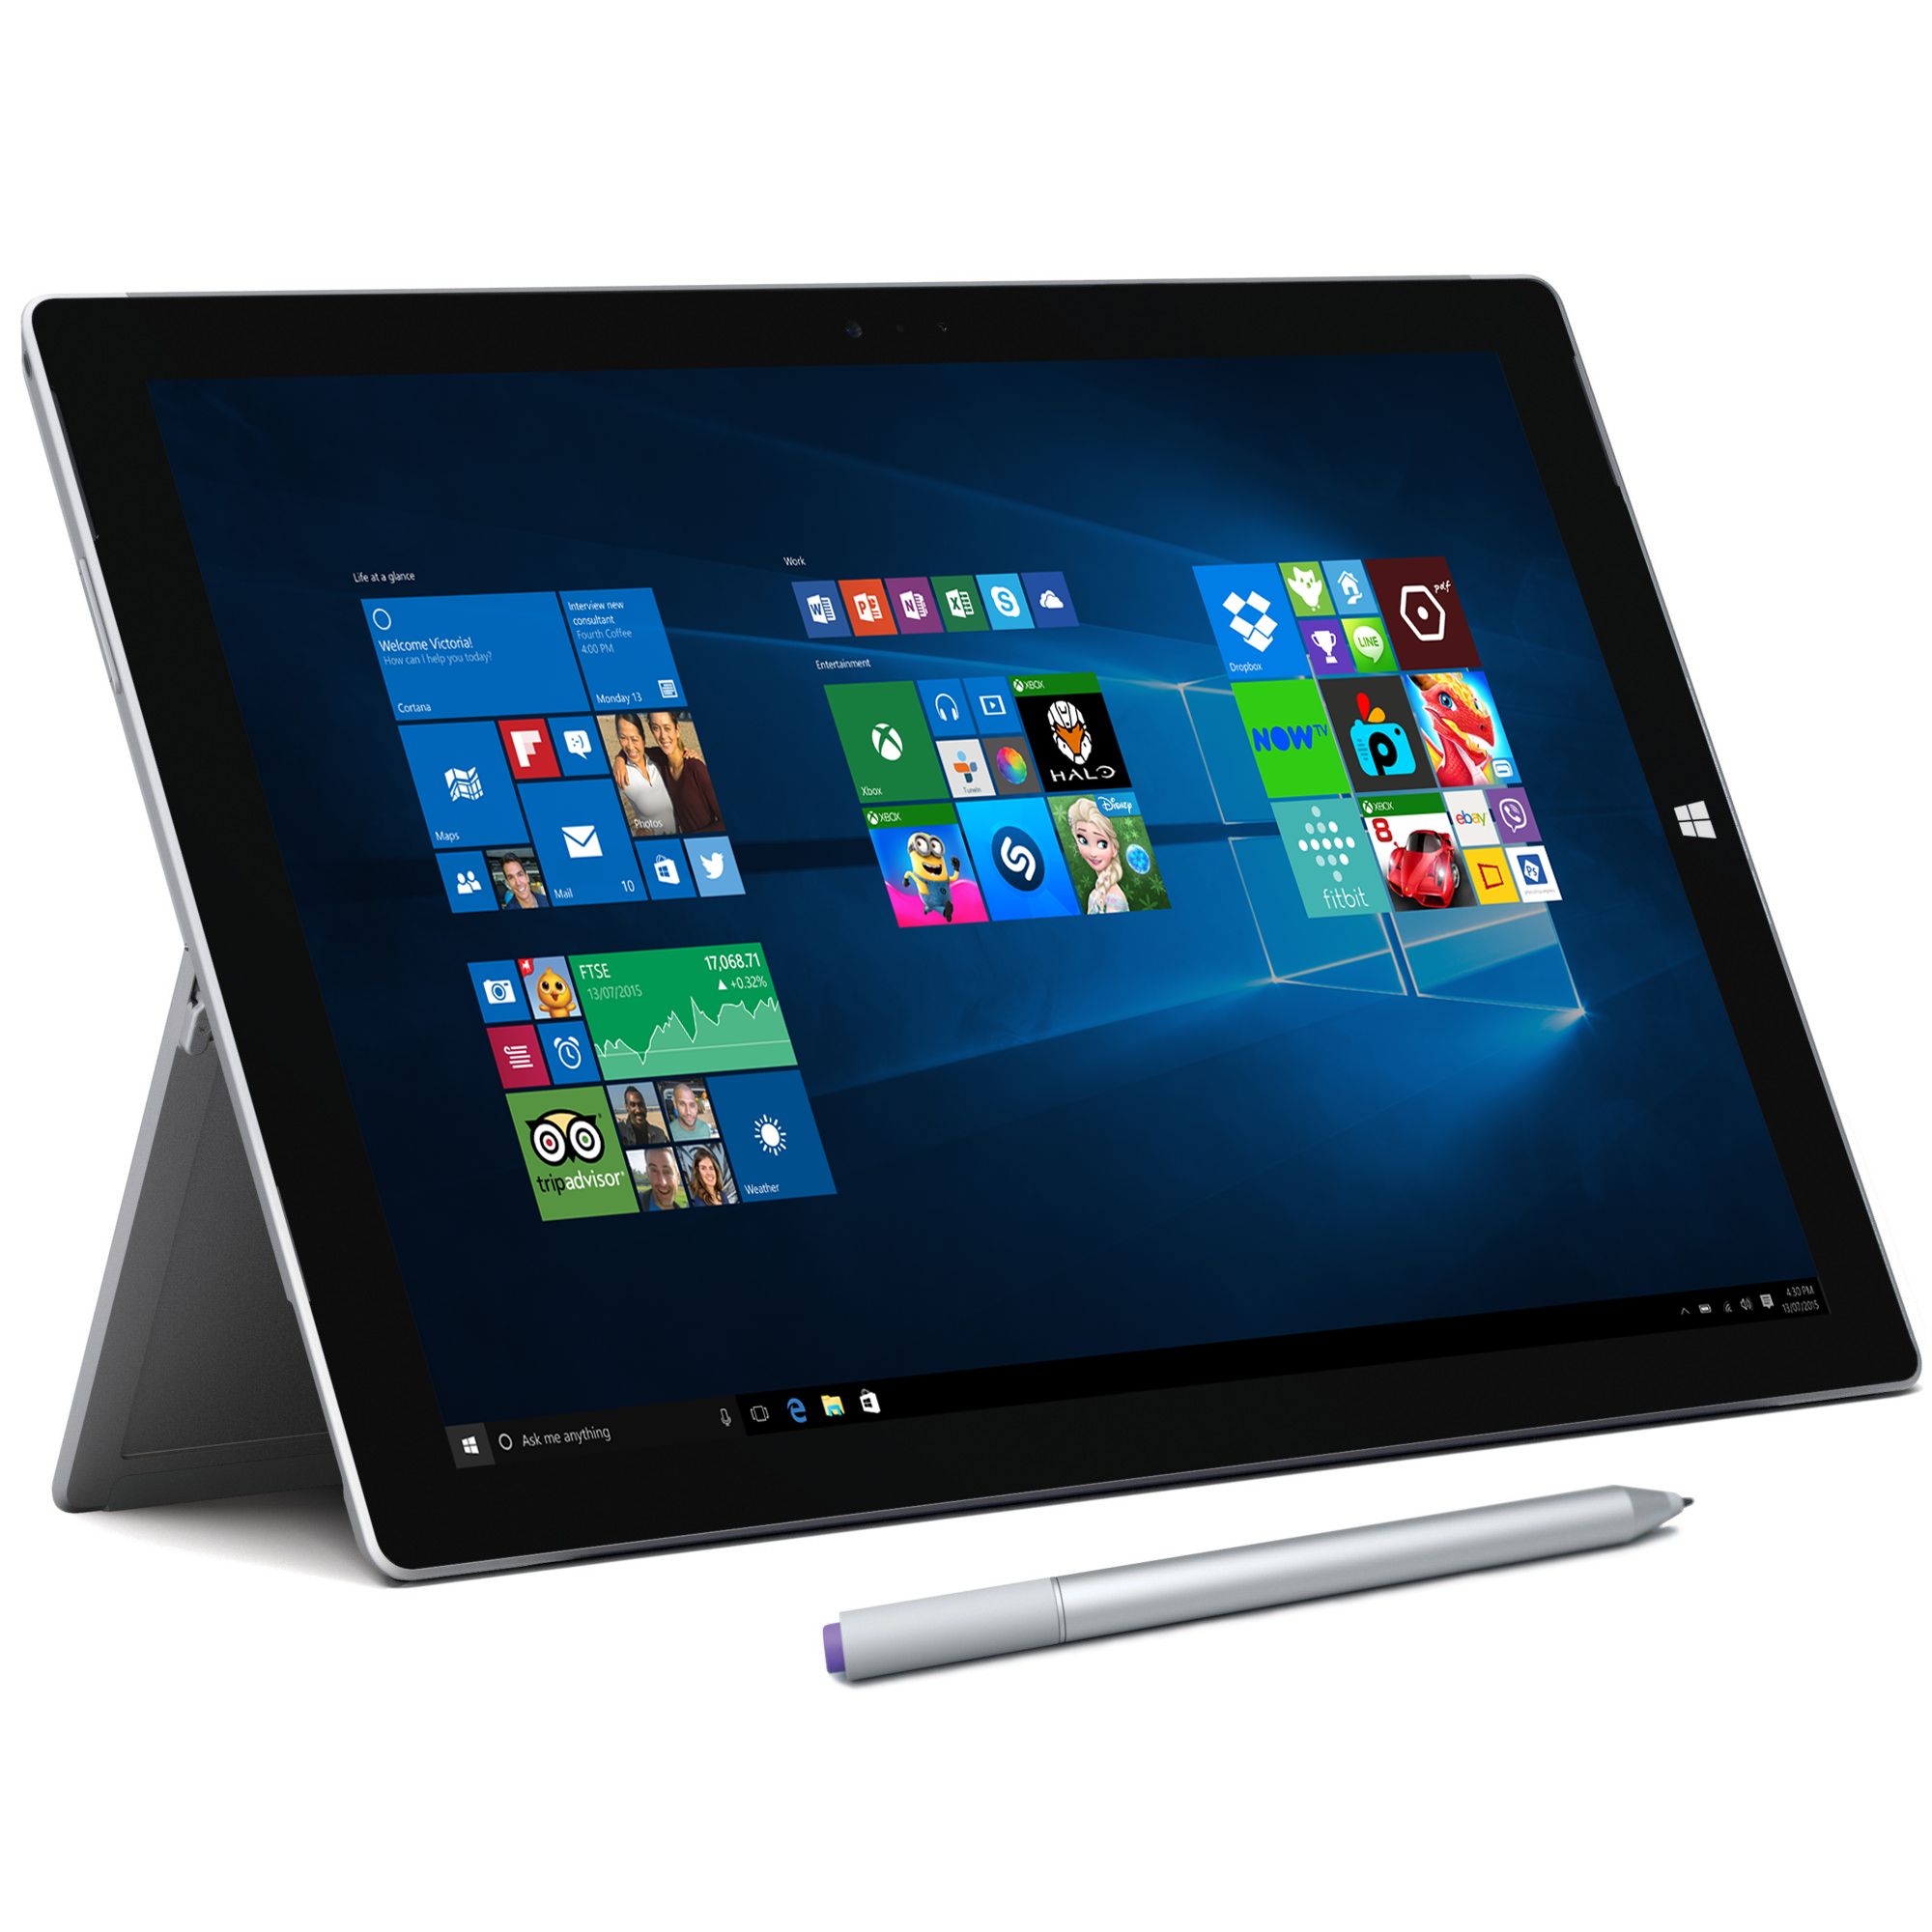 Microsoft Surface Pro 3, Intel Core i5, 4GB RAM, Windows 10 Pro, 12